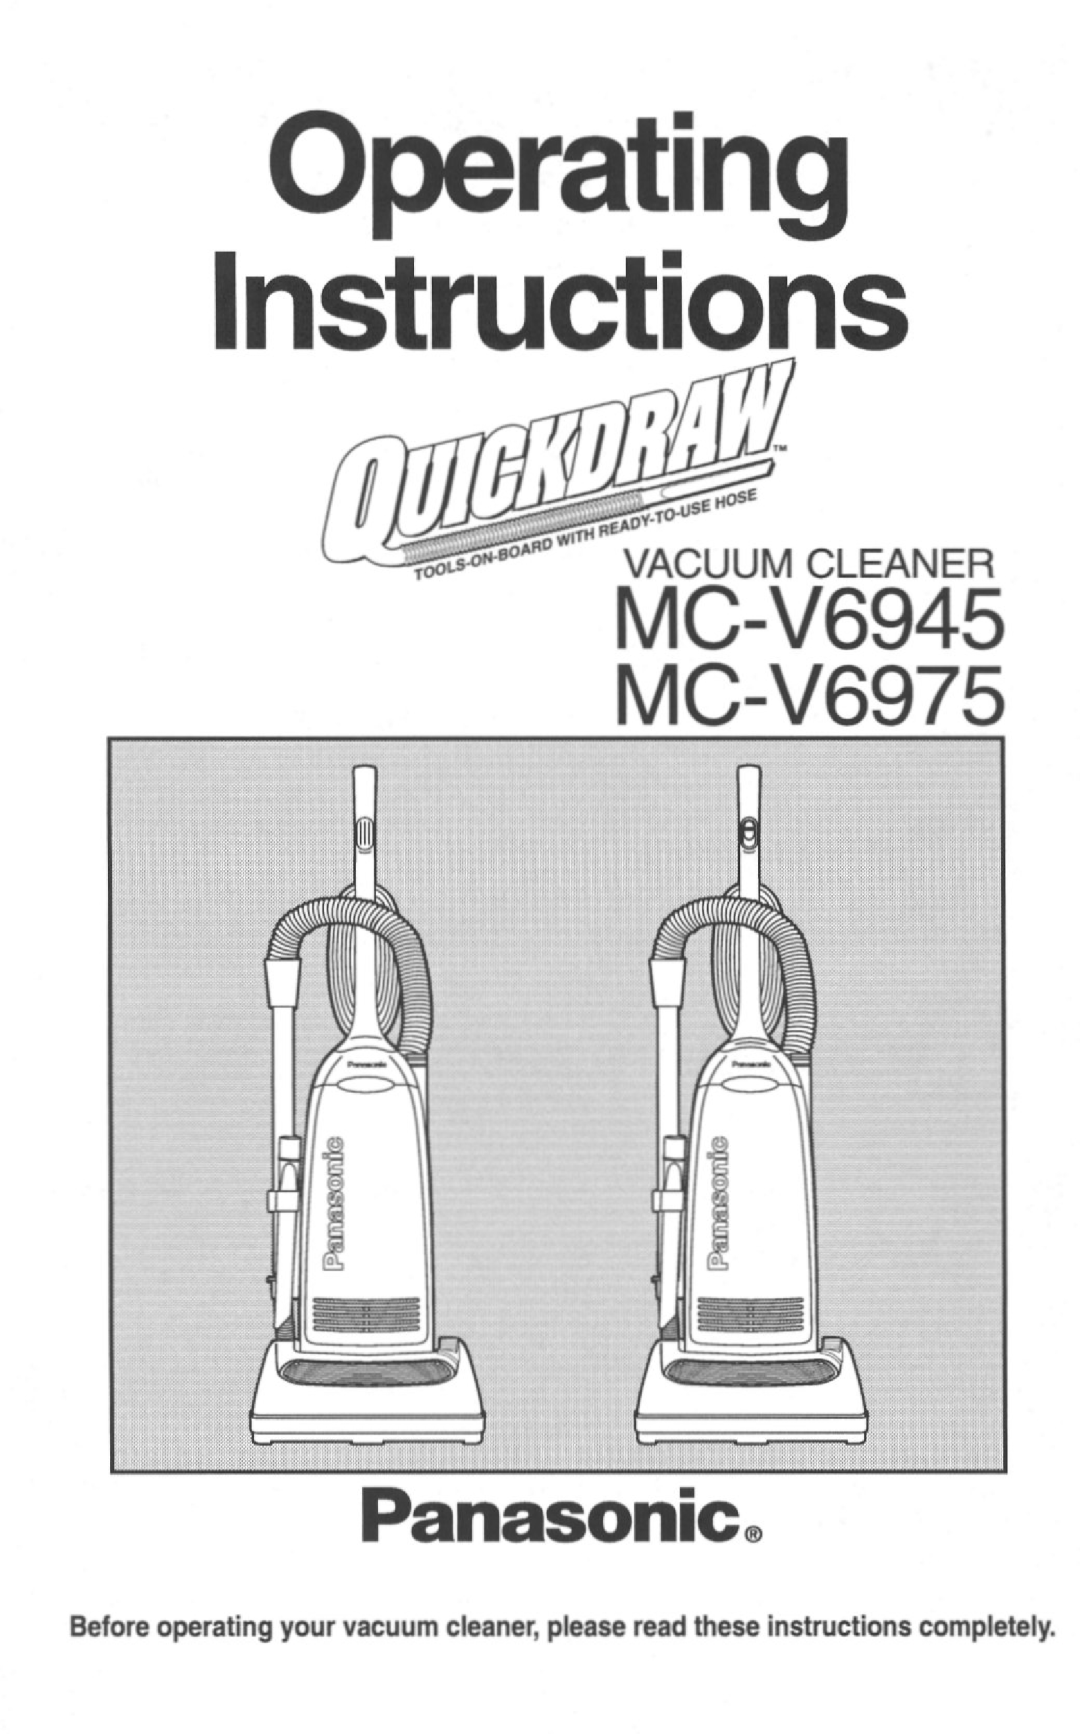 Panasonic MC-V6975, MC-V6945 manual 